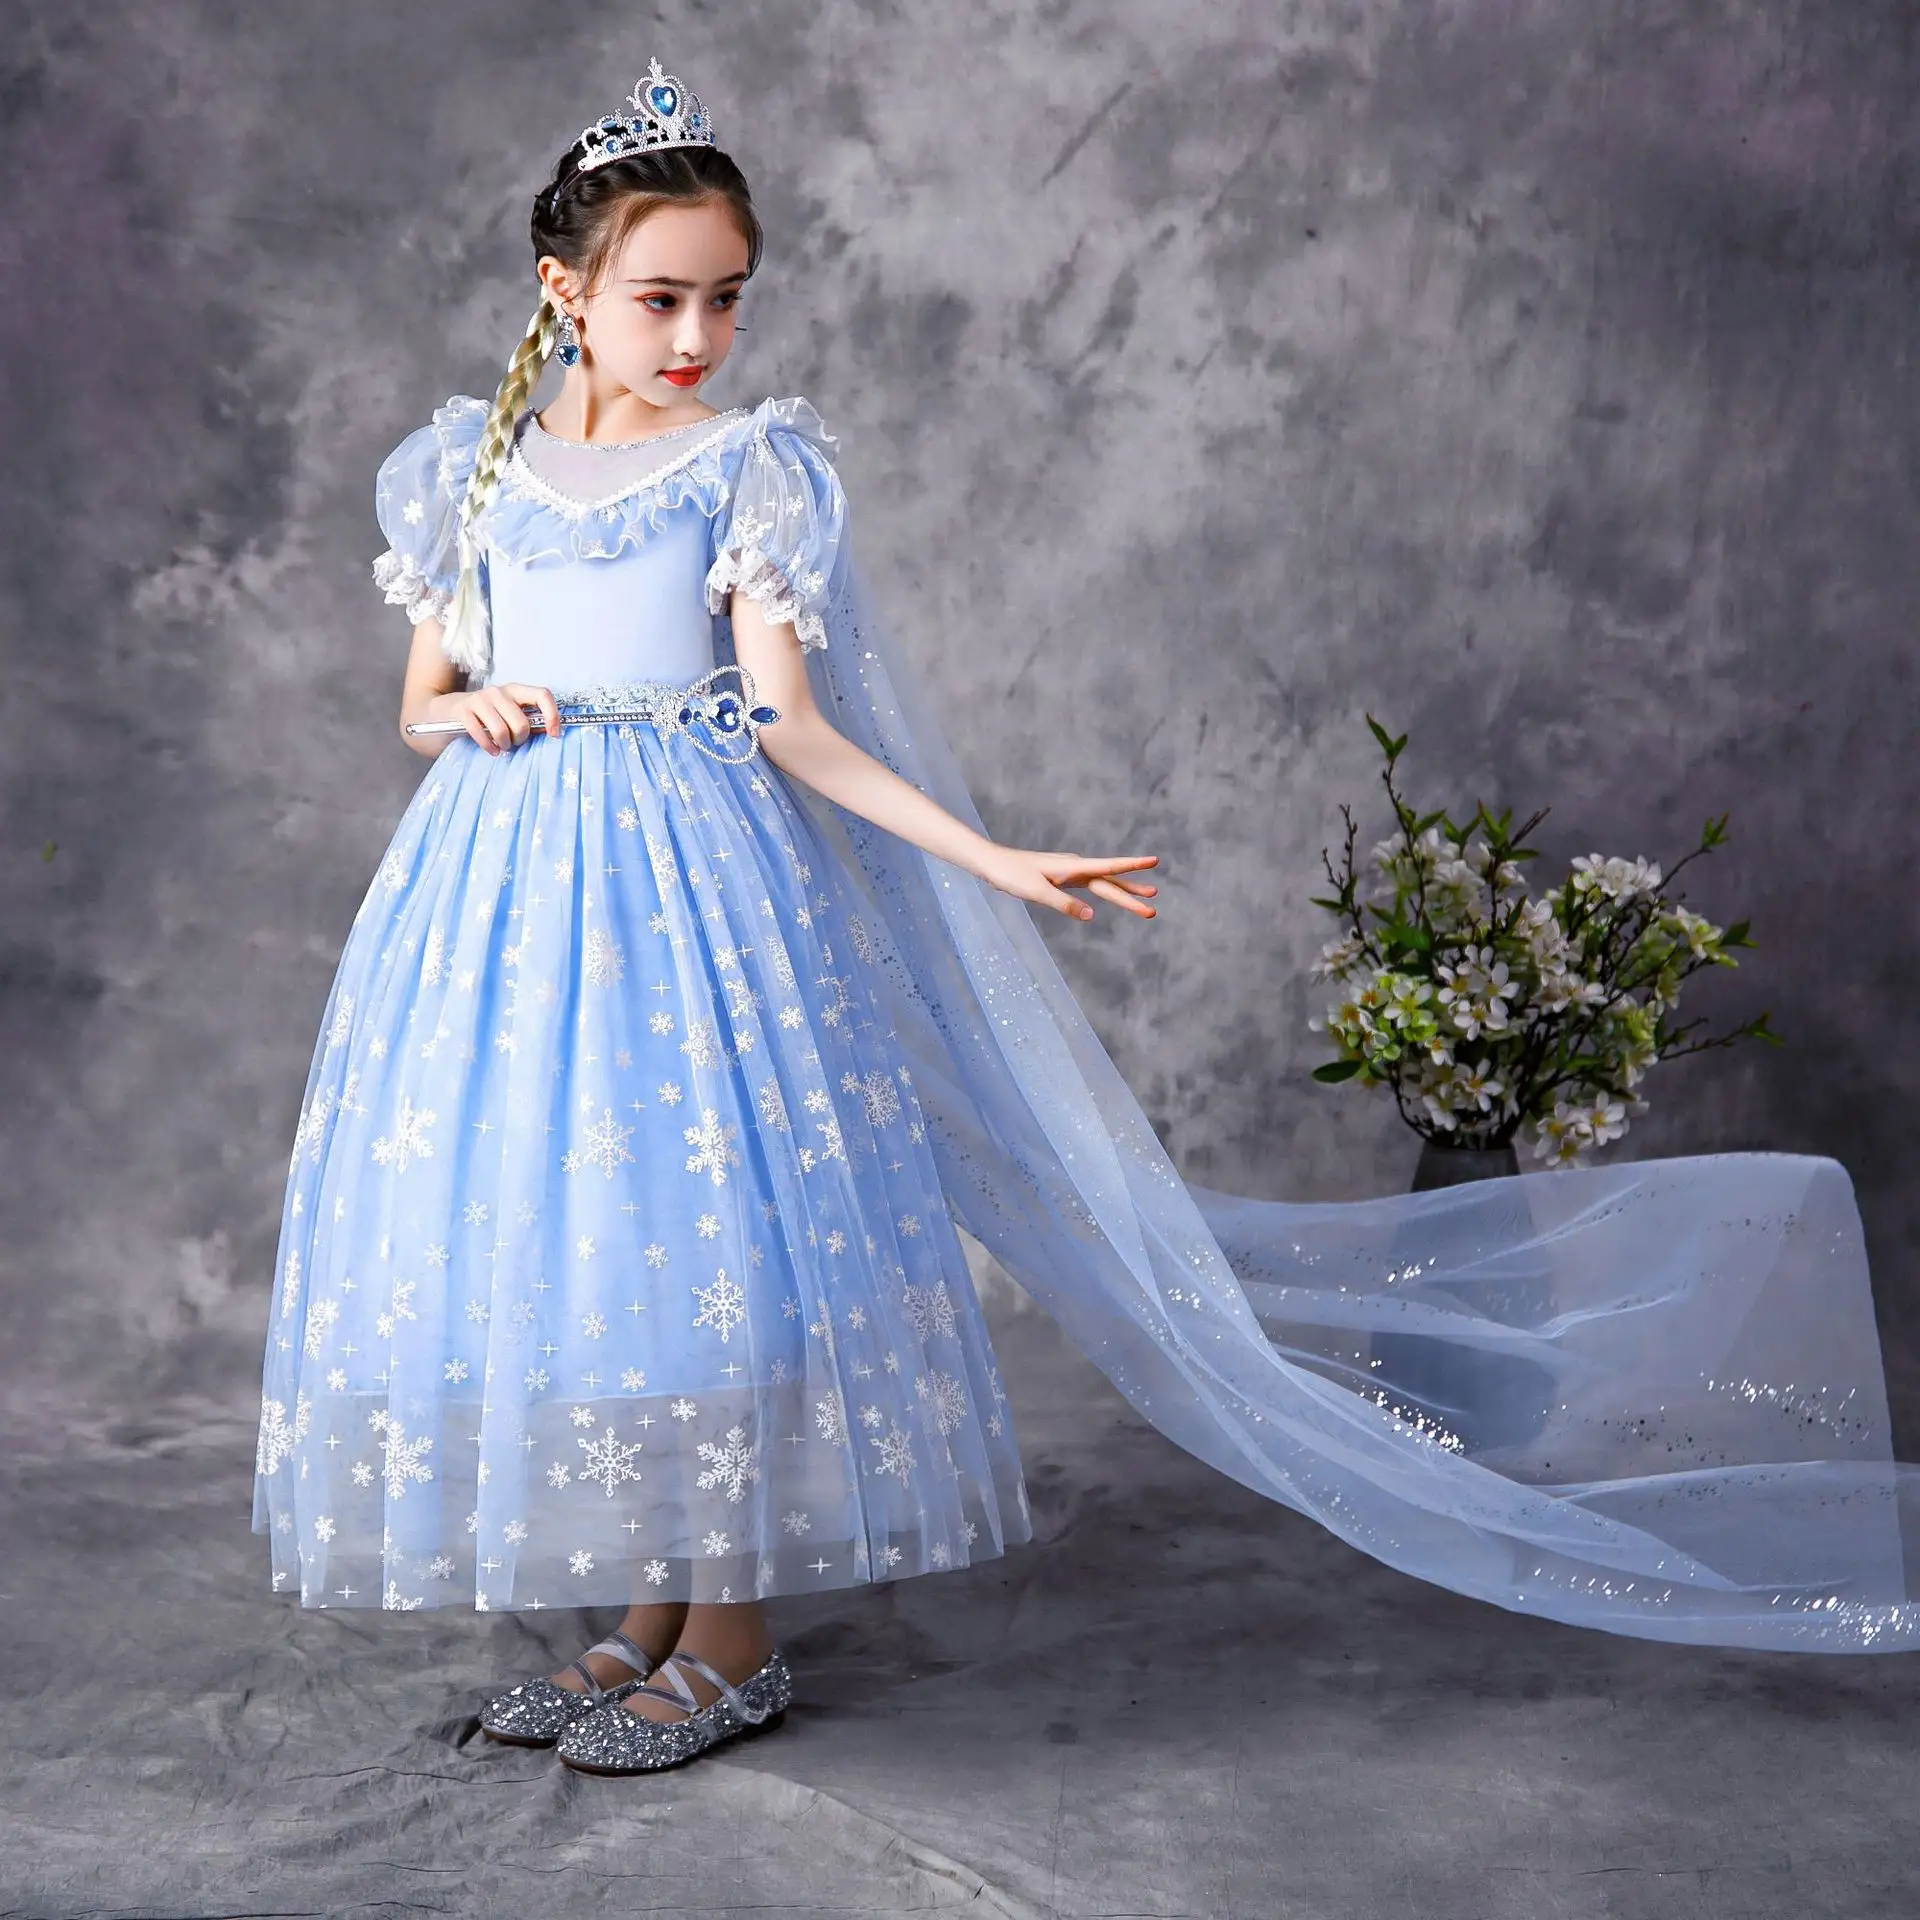 MQATZ-vestido de Elsa para Halloween, disfraz de fantasía de TV y película para niños y niñas, vestido de princesa para fiesta